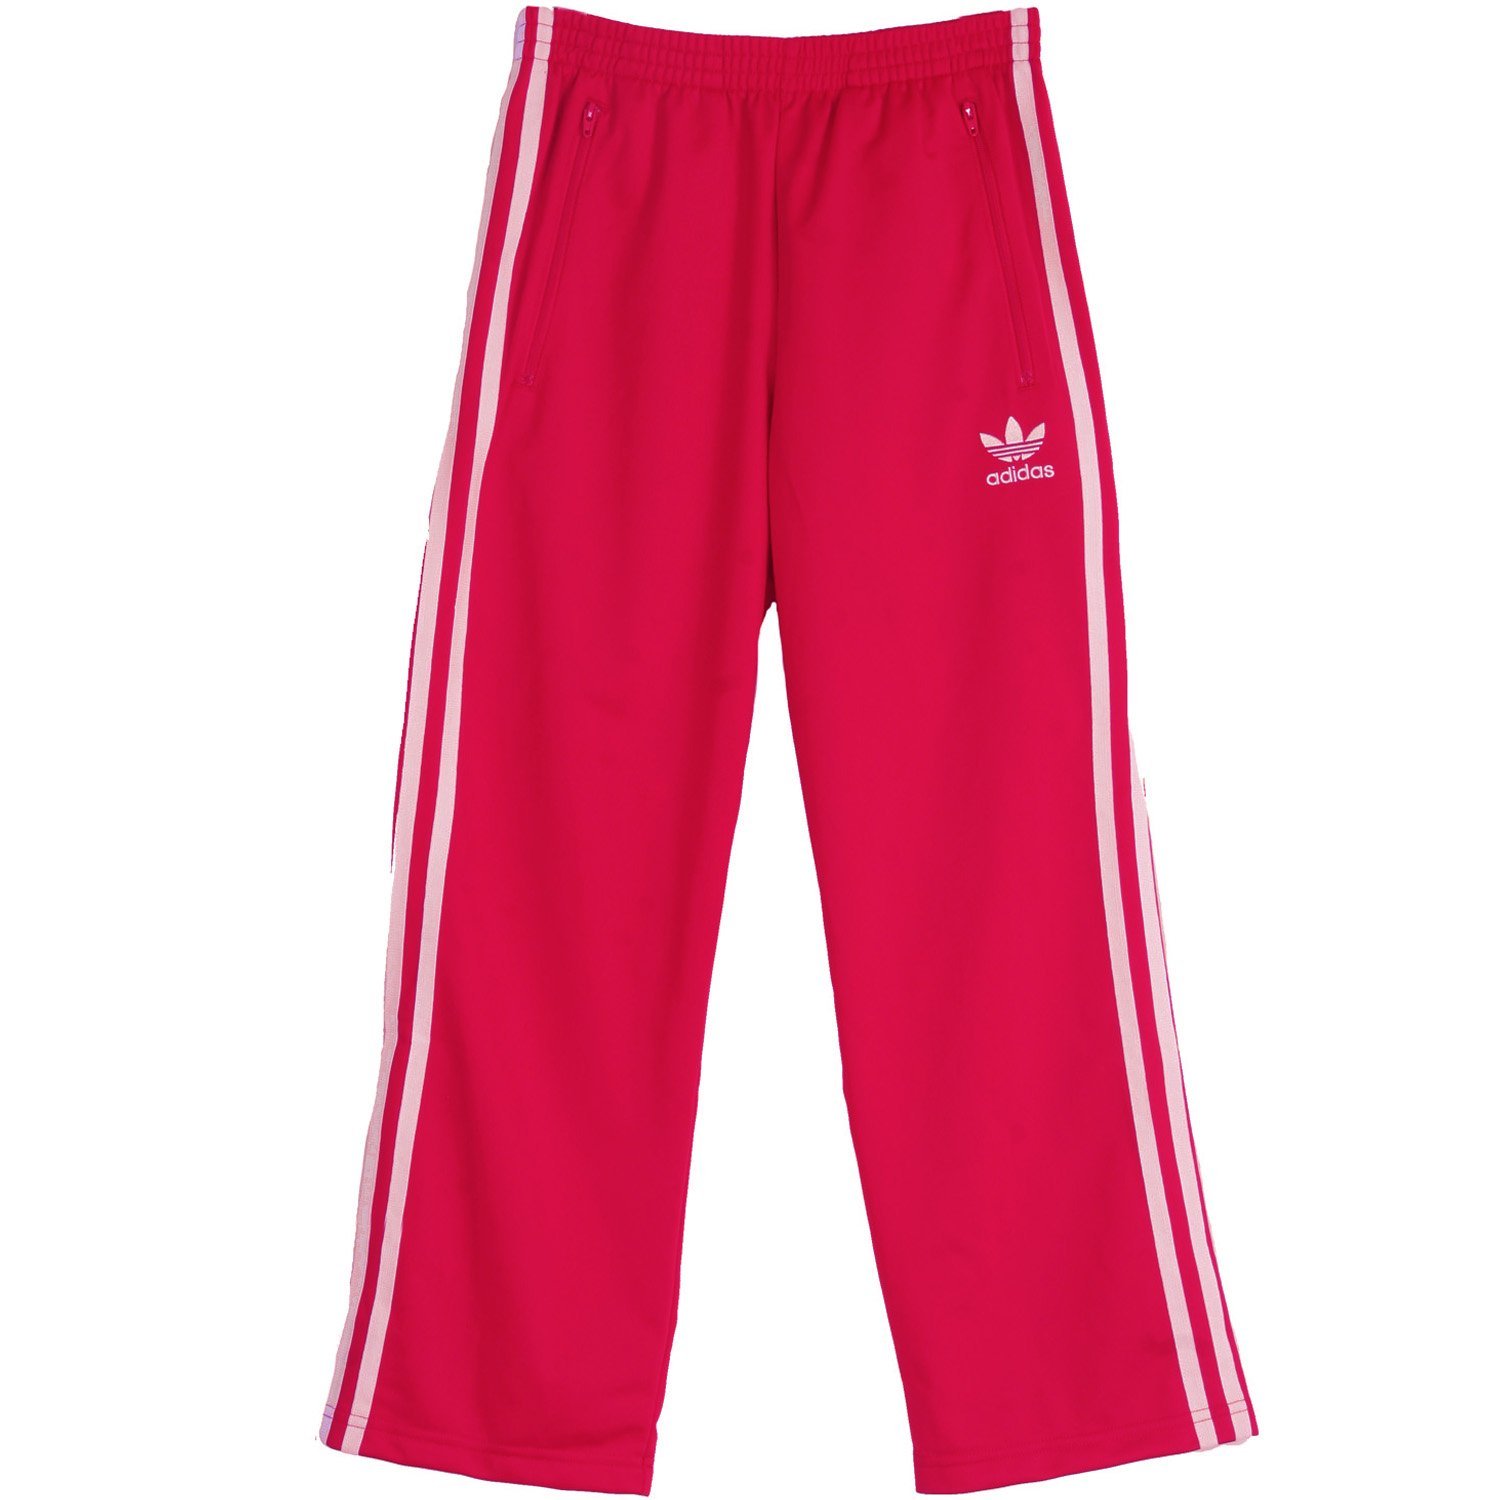 Adidas Firebird Kids Track Pants Pink-White f81475 | eBay